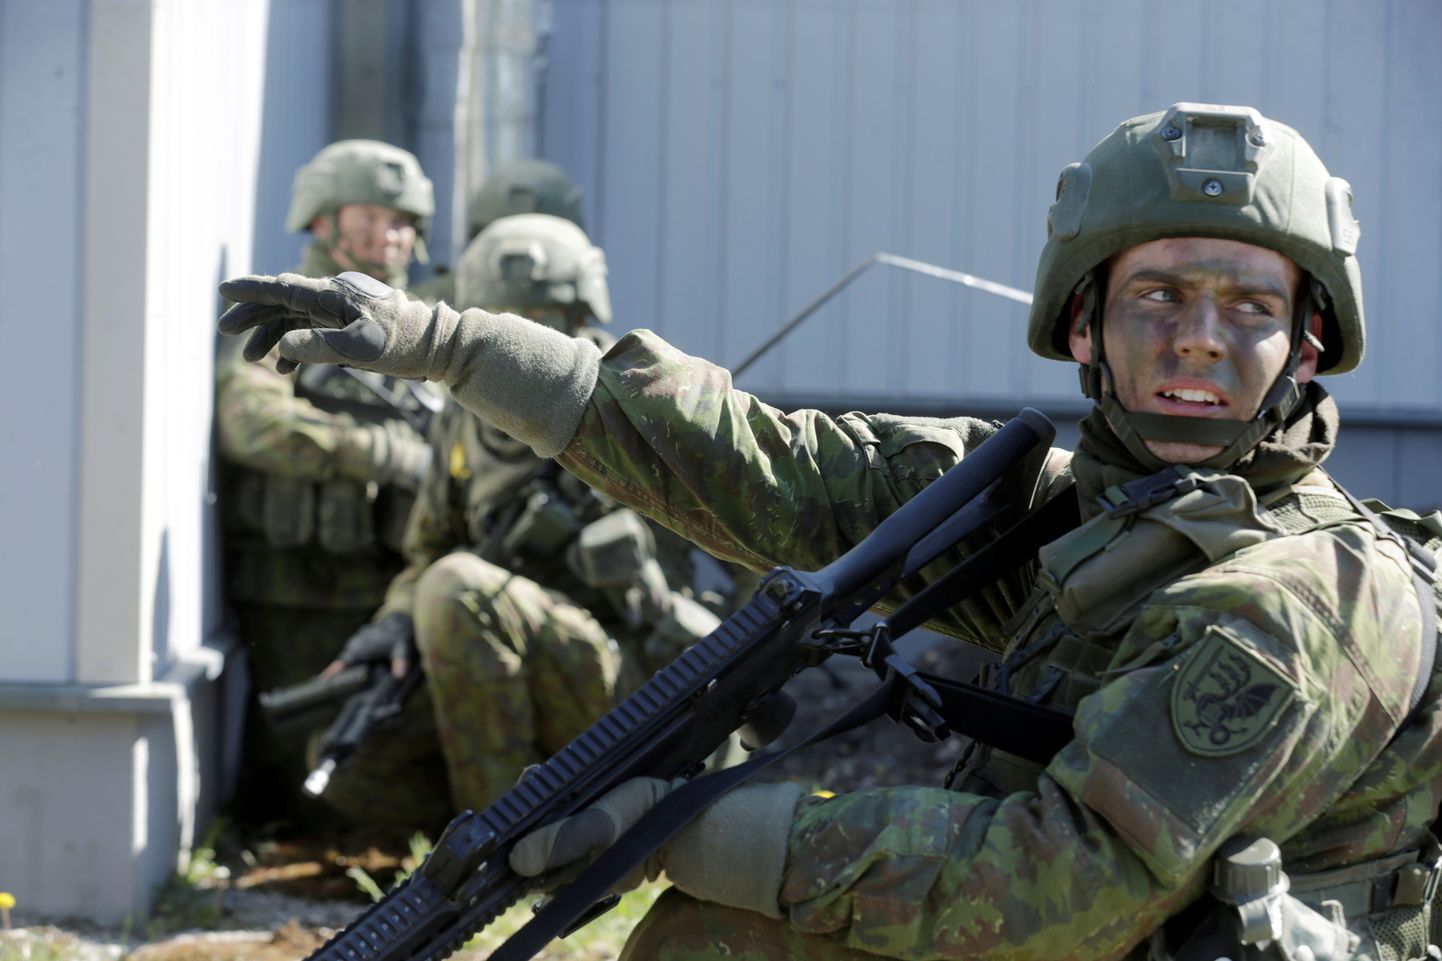 Leedu sõdurid õppustel. Foto on illustratiivne.